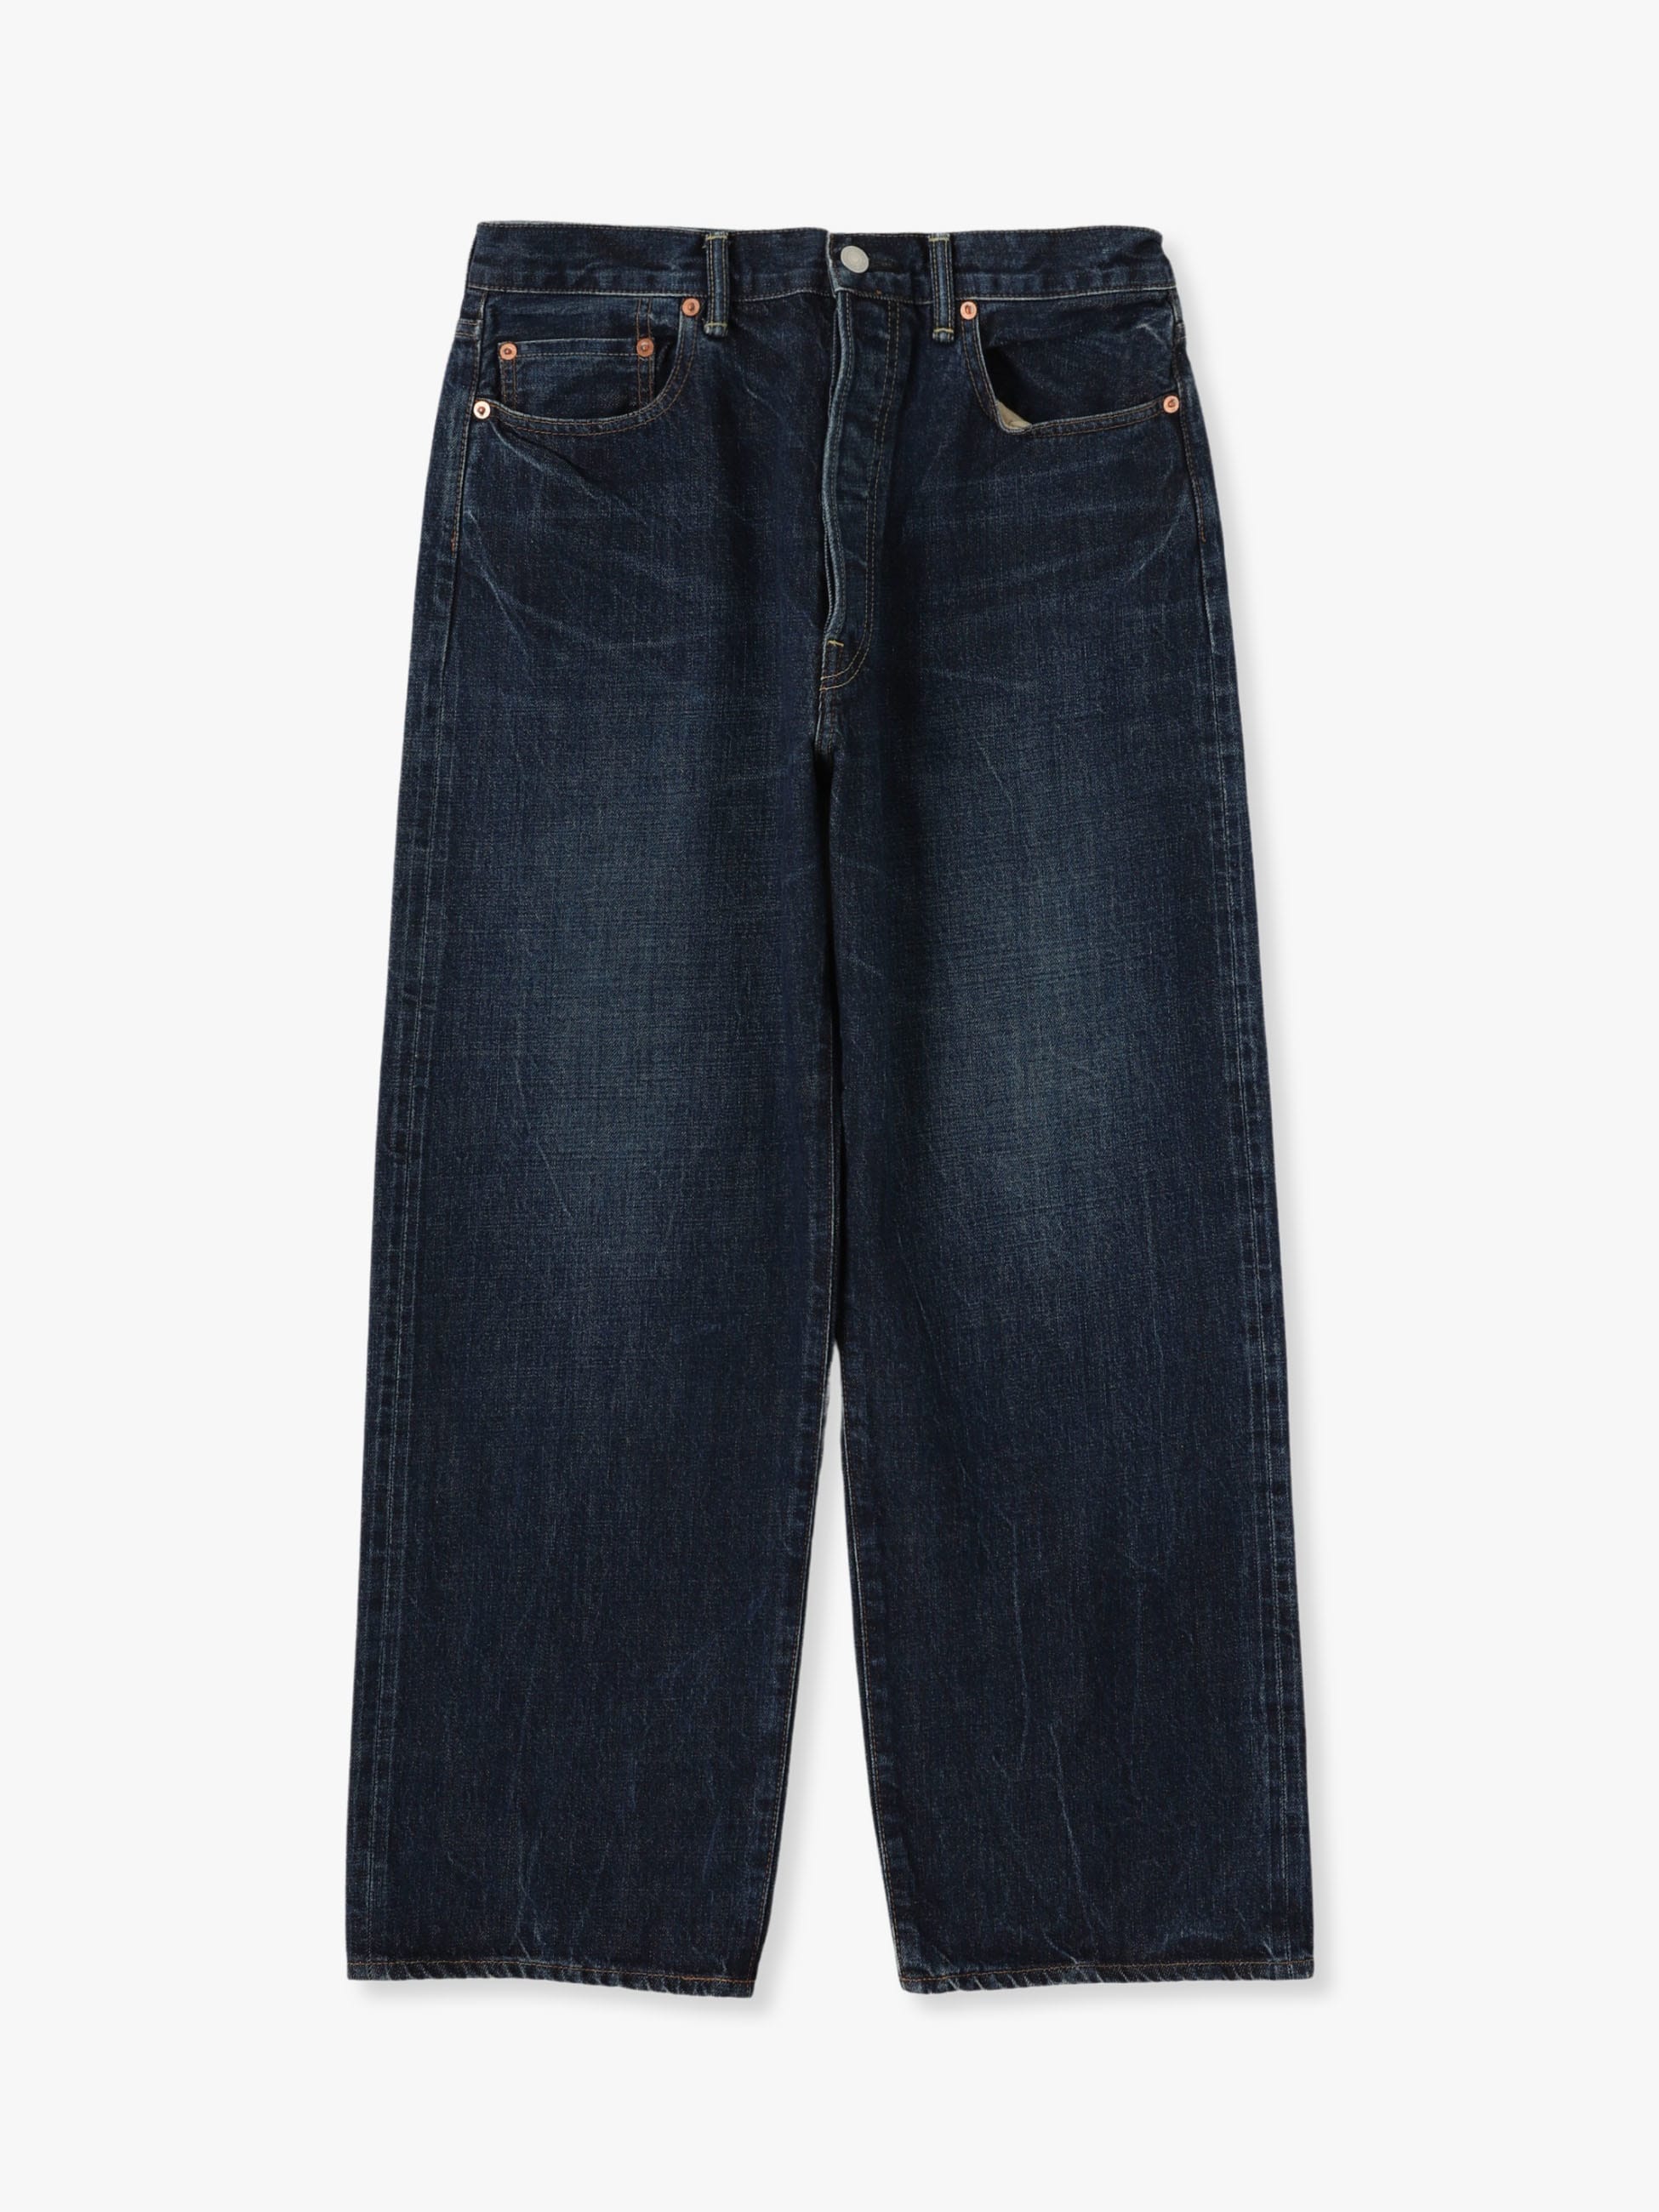 9,200円Ron Herman  Used Wide Fit Denim Pants